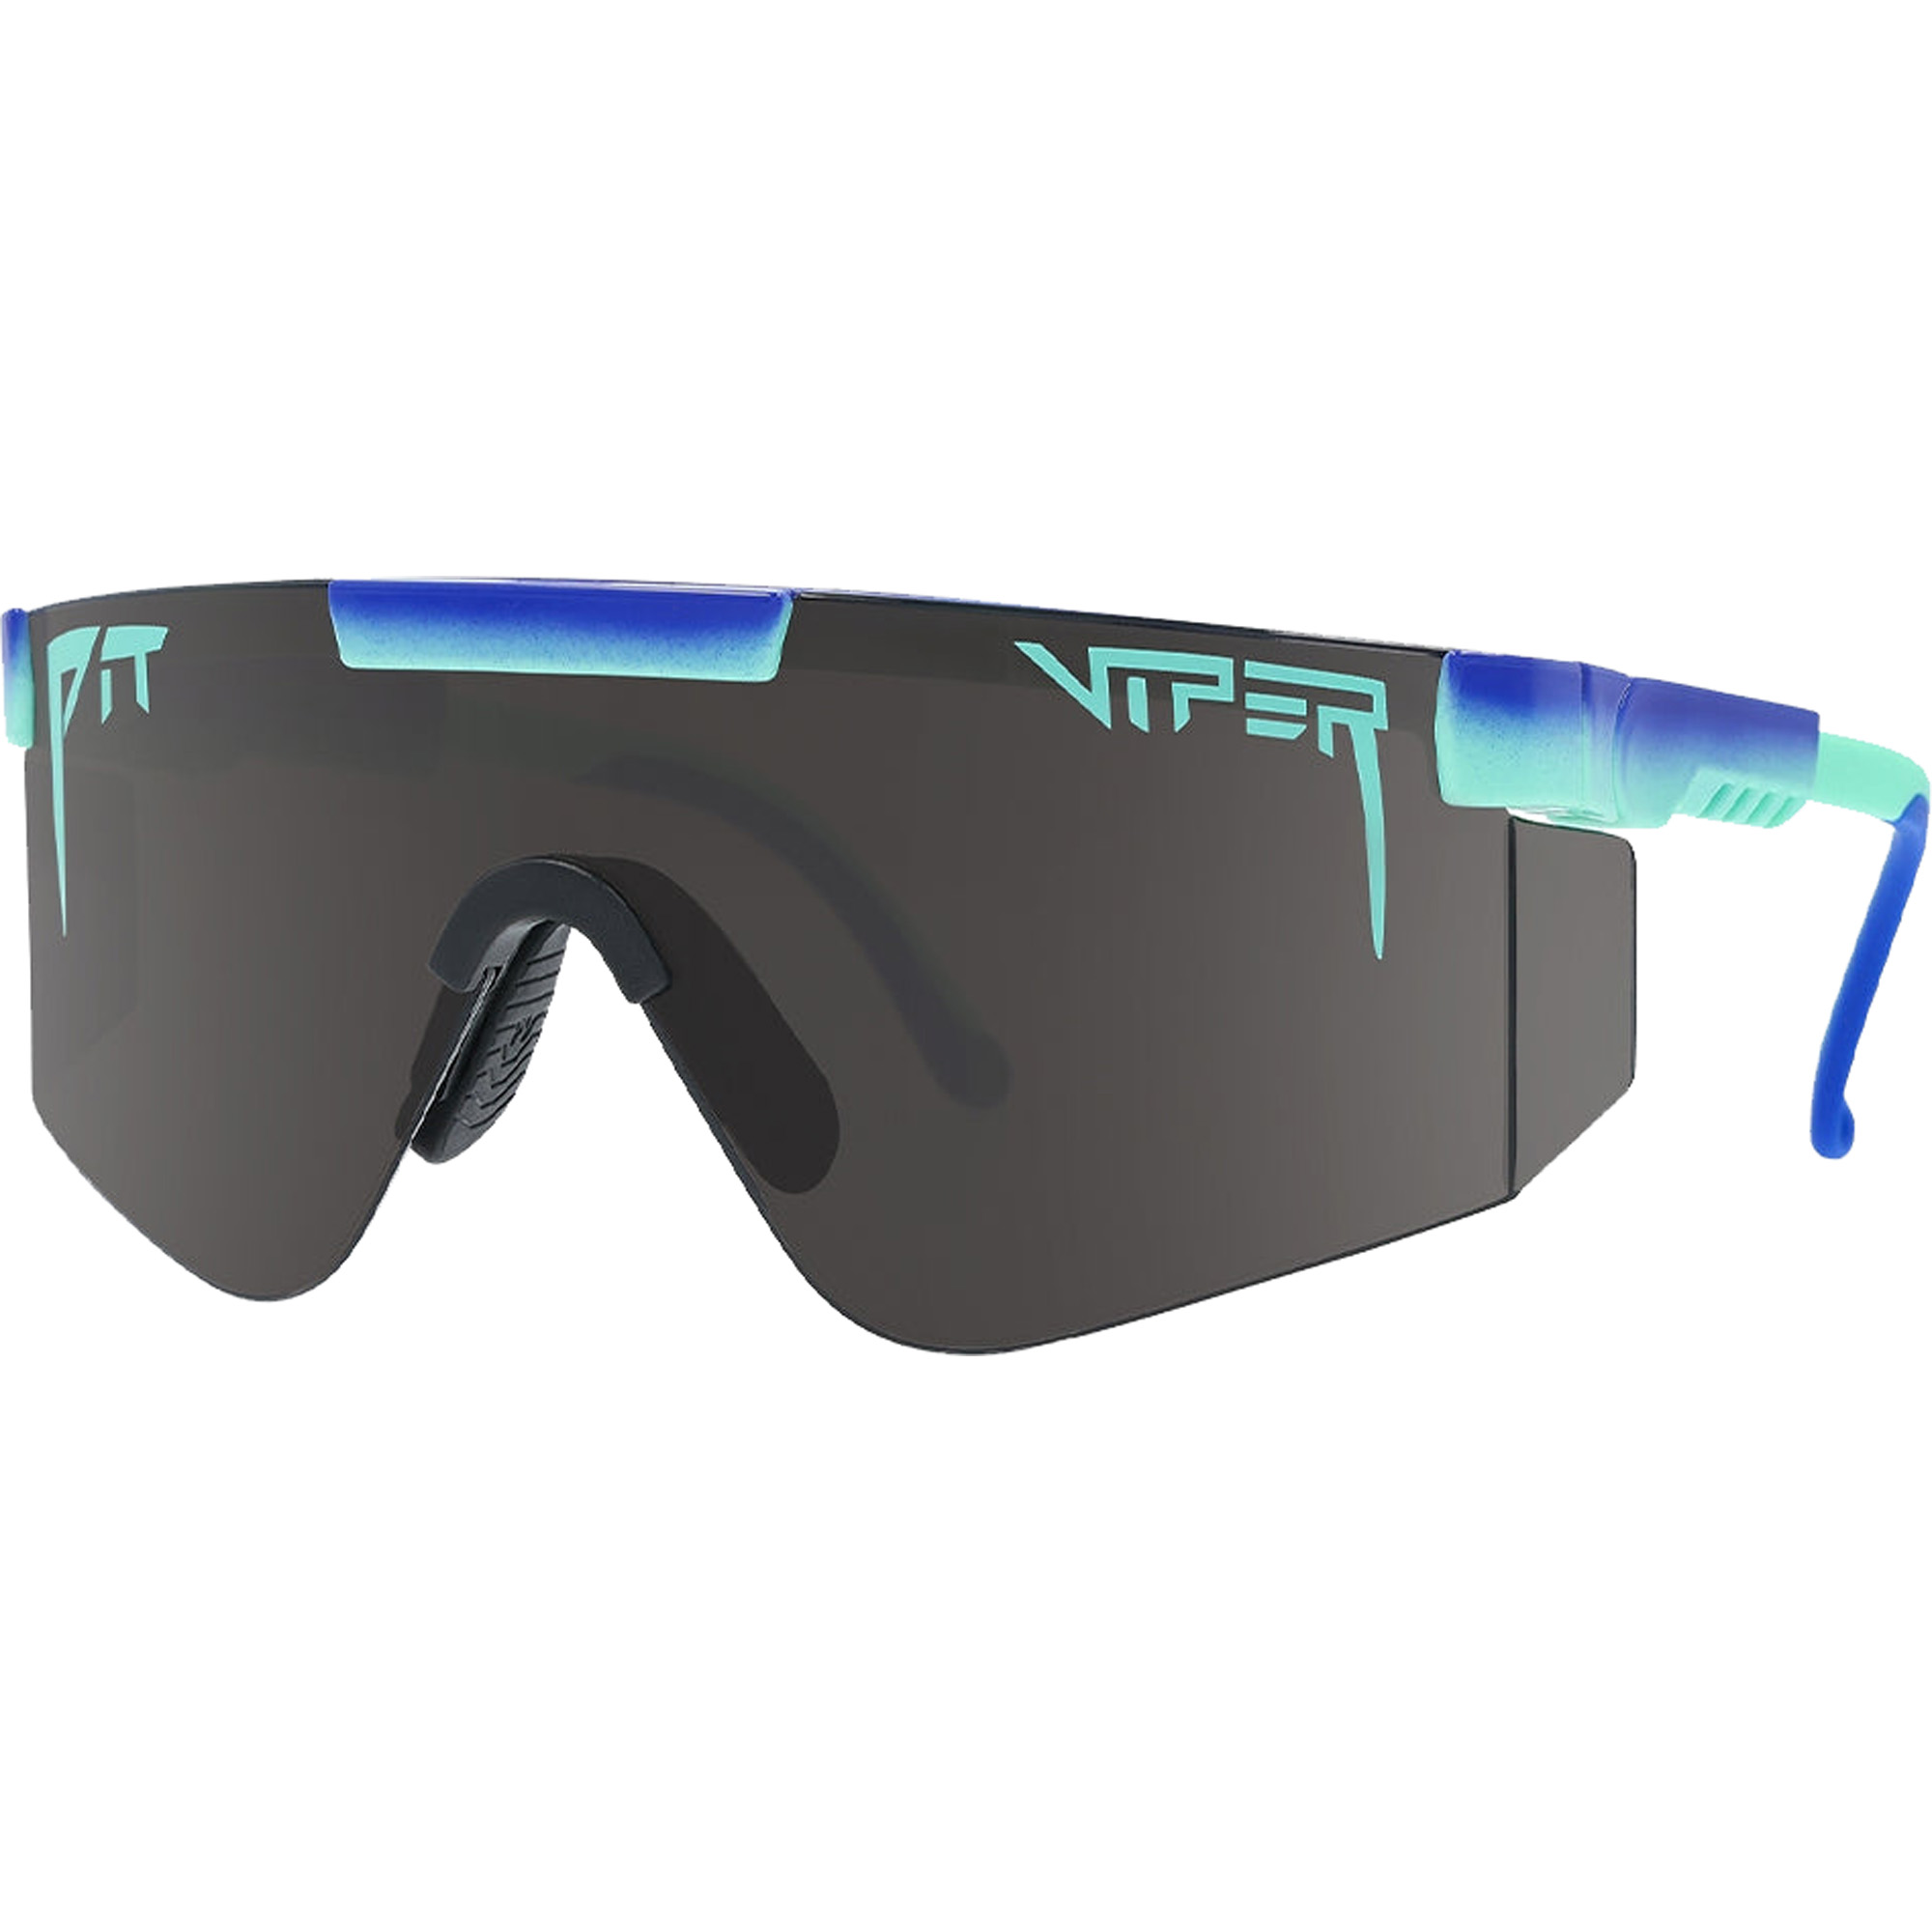 Pit Viper The 2000s Sunglasses